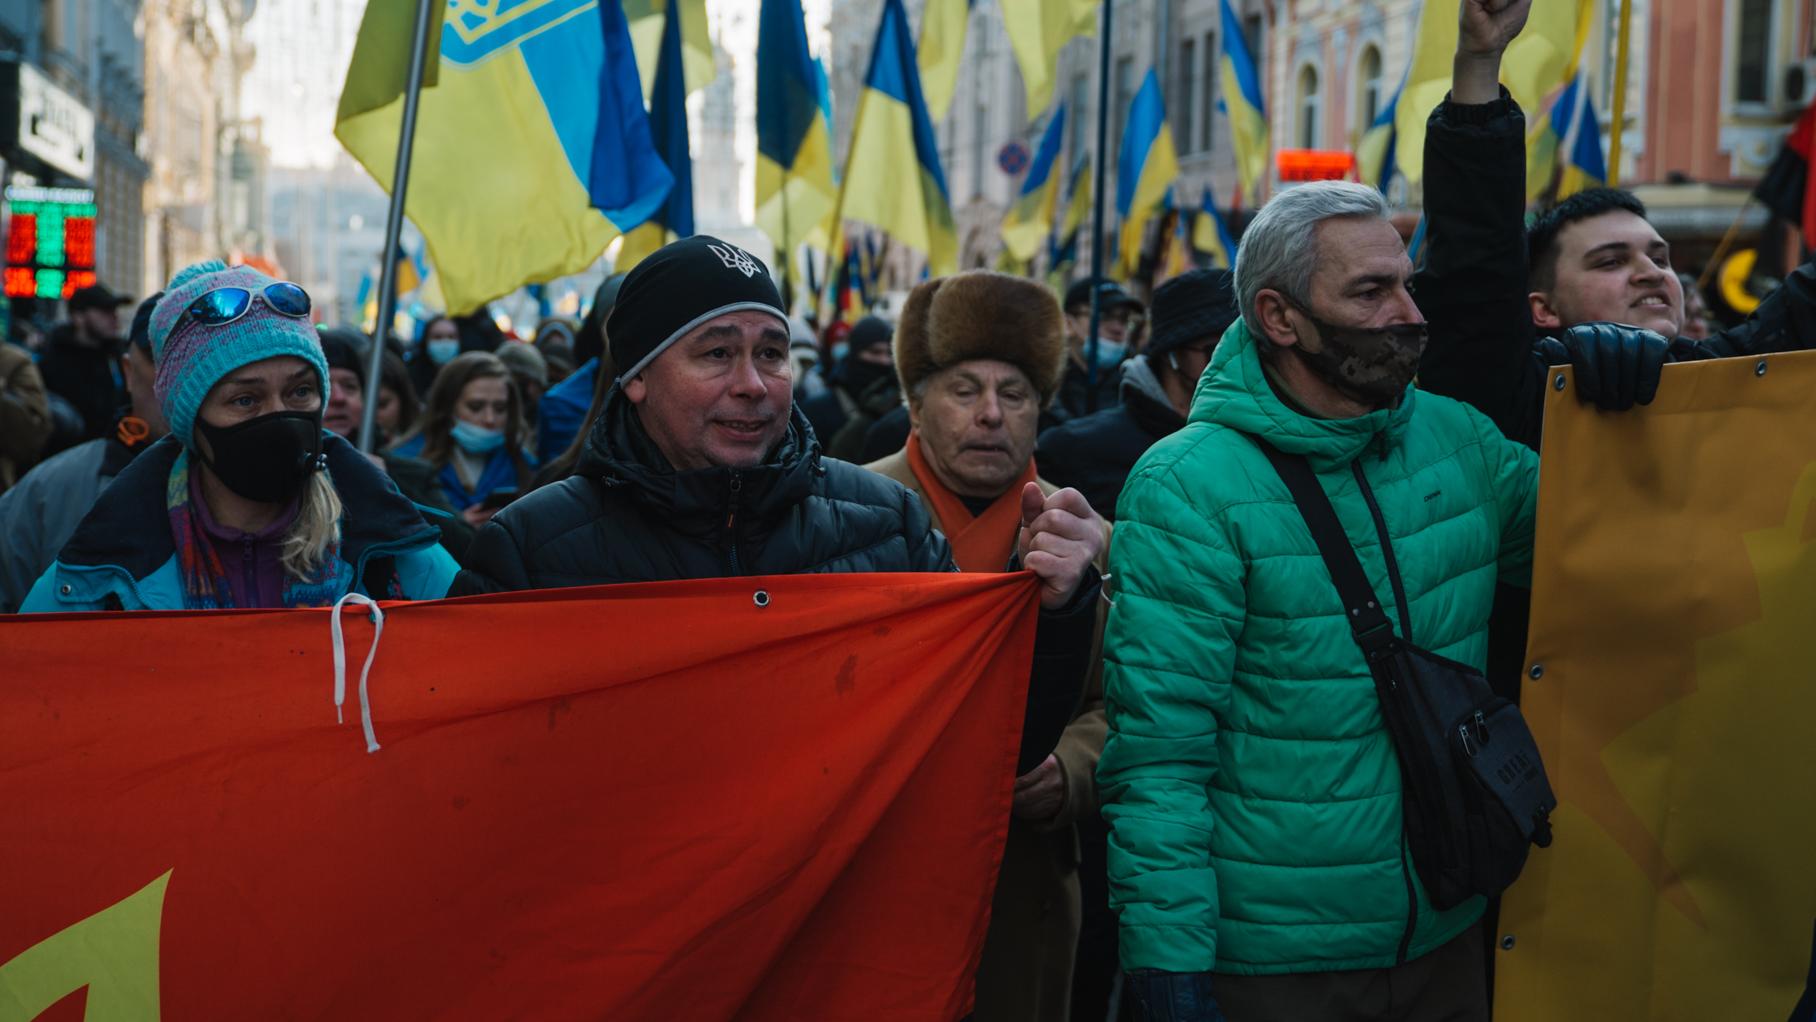 Ludzie w zimowych kurtkach z transparentami i flagami